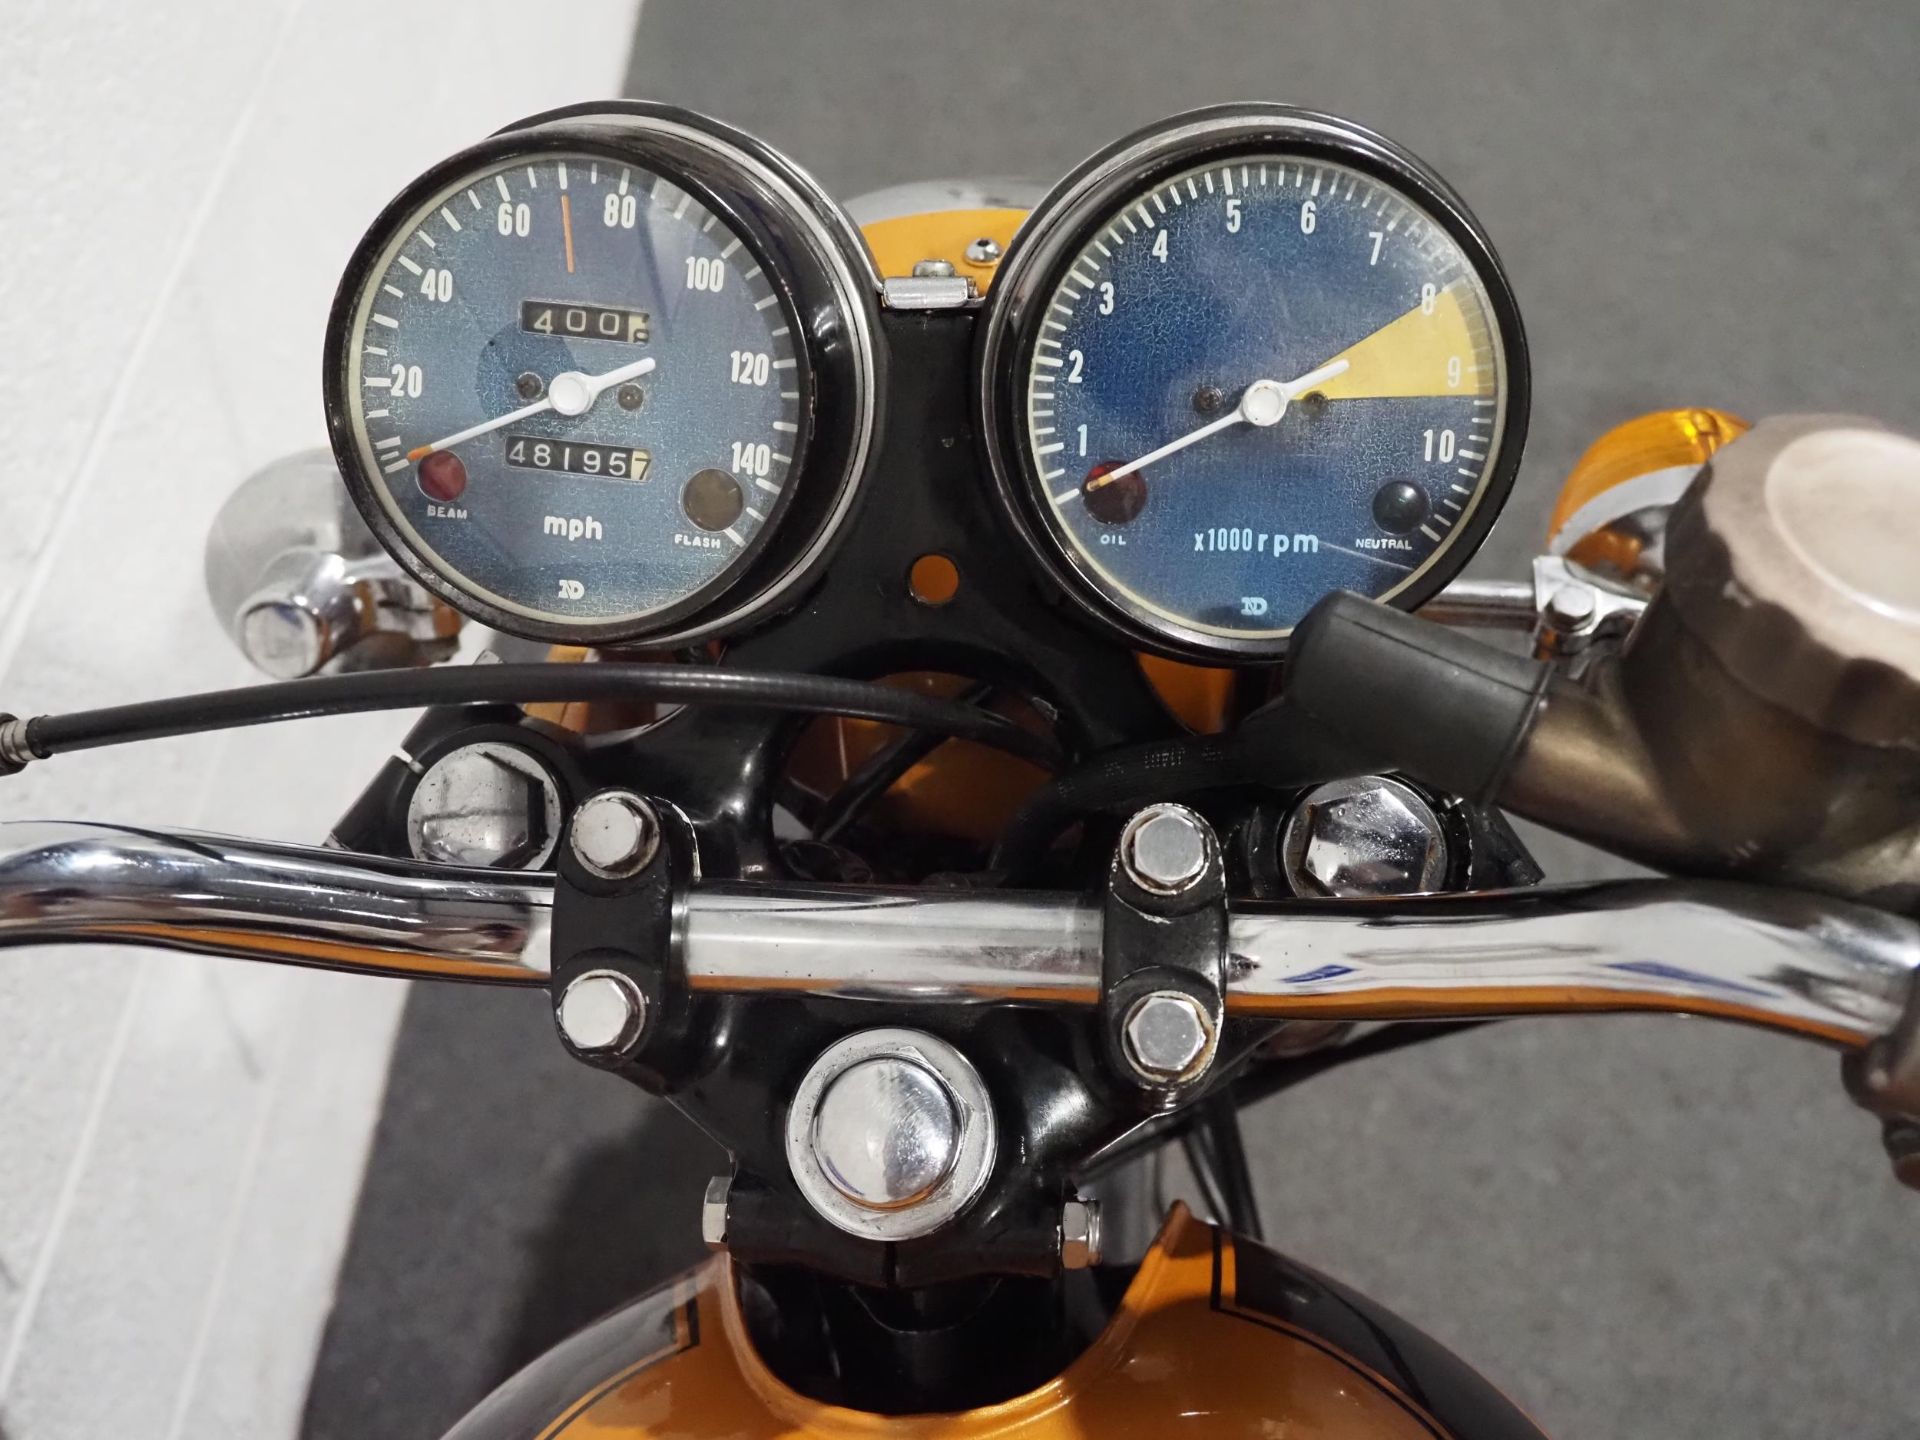 Honda 750-4 motorcycle, 1971, 750cc Frame no. CB7501118119 Engine no. CB7501117934 Runs and rides, - Image 5 of 6